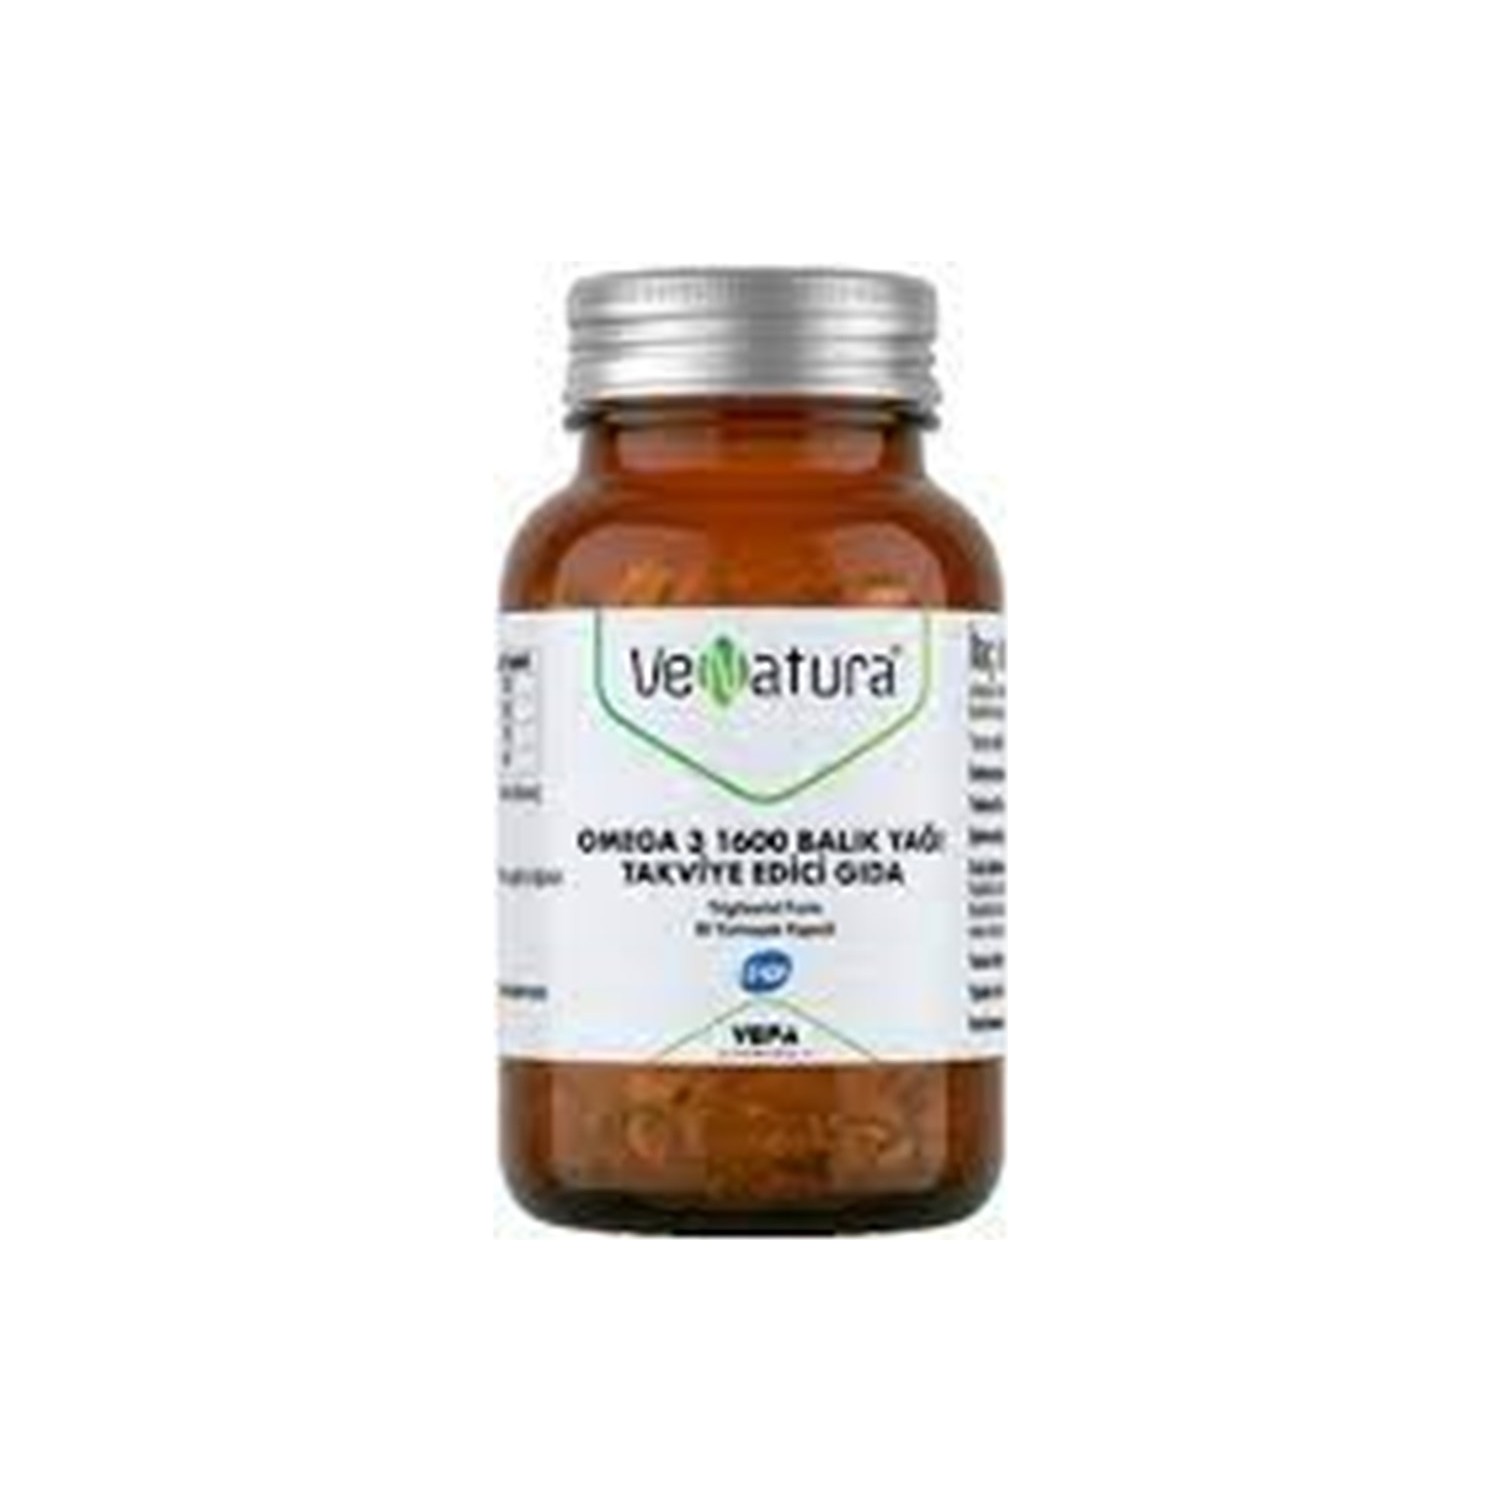 Омега-3 Venatura, 1600 мг, 30 капсул омега 3 ultra venatura 30 капсул